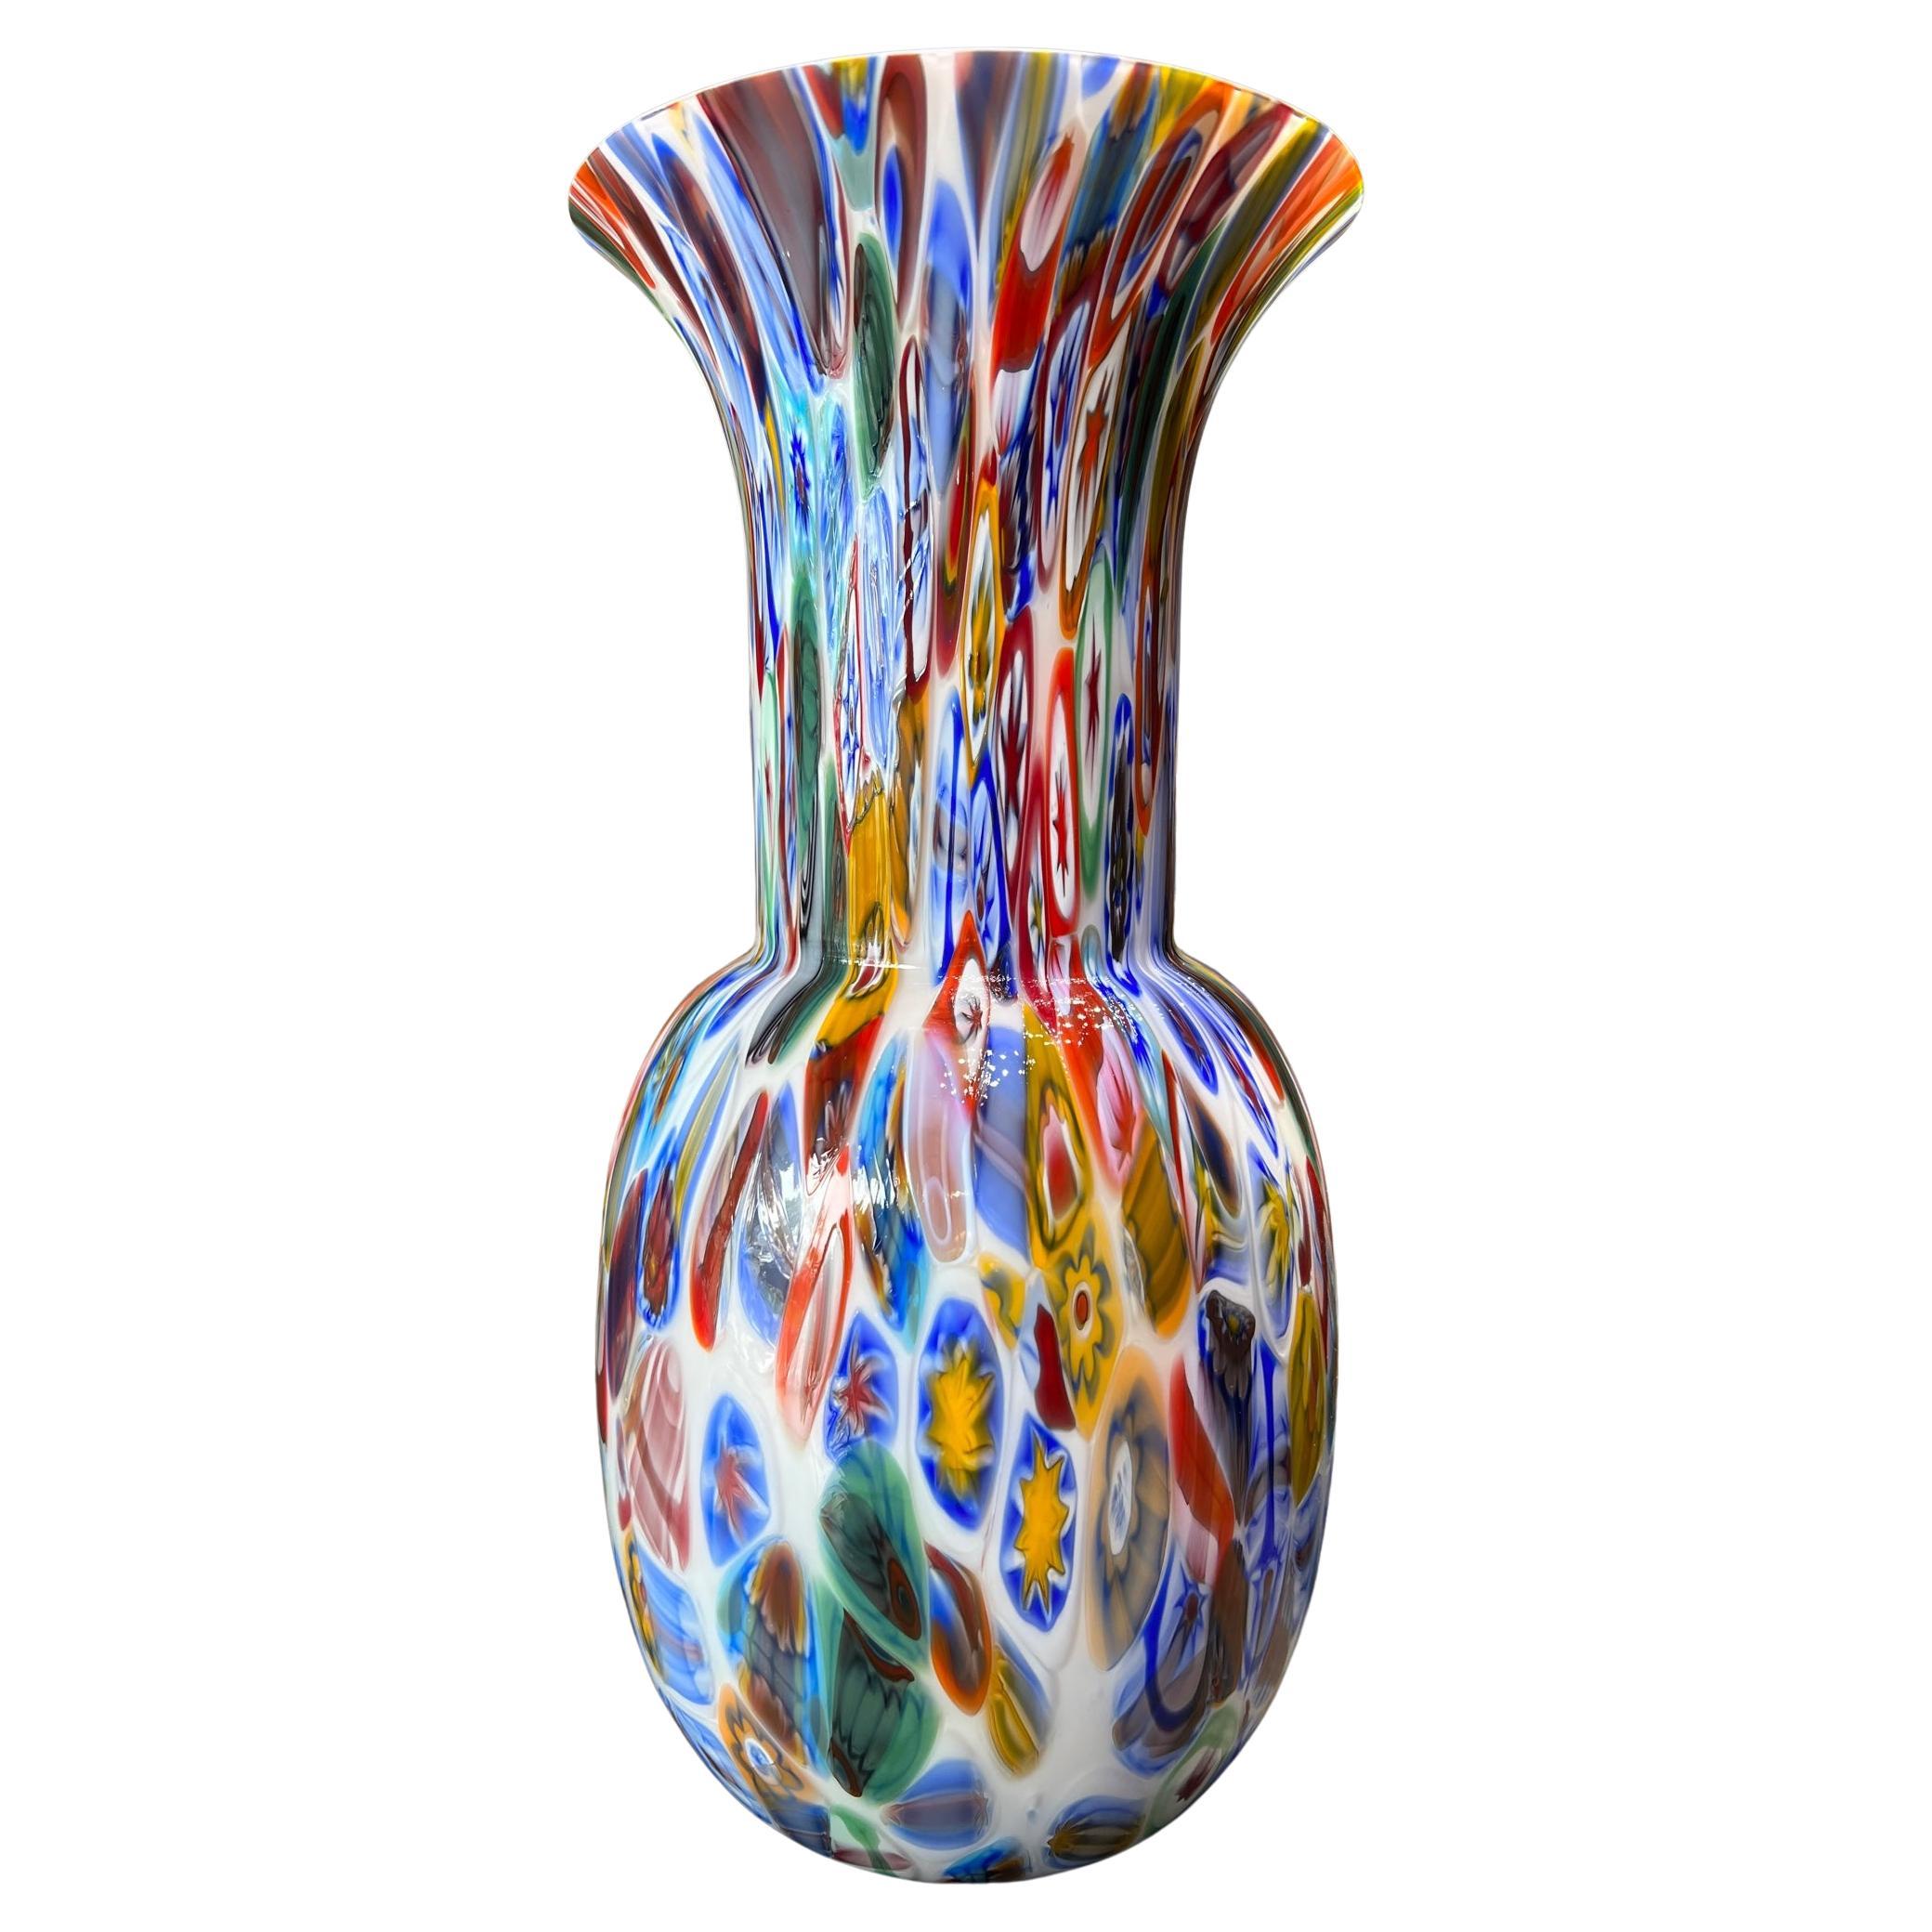 1295, Murano Hand Made "Ca Savio" Murrine Blown Glass Vase H 14, 5 in